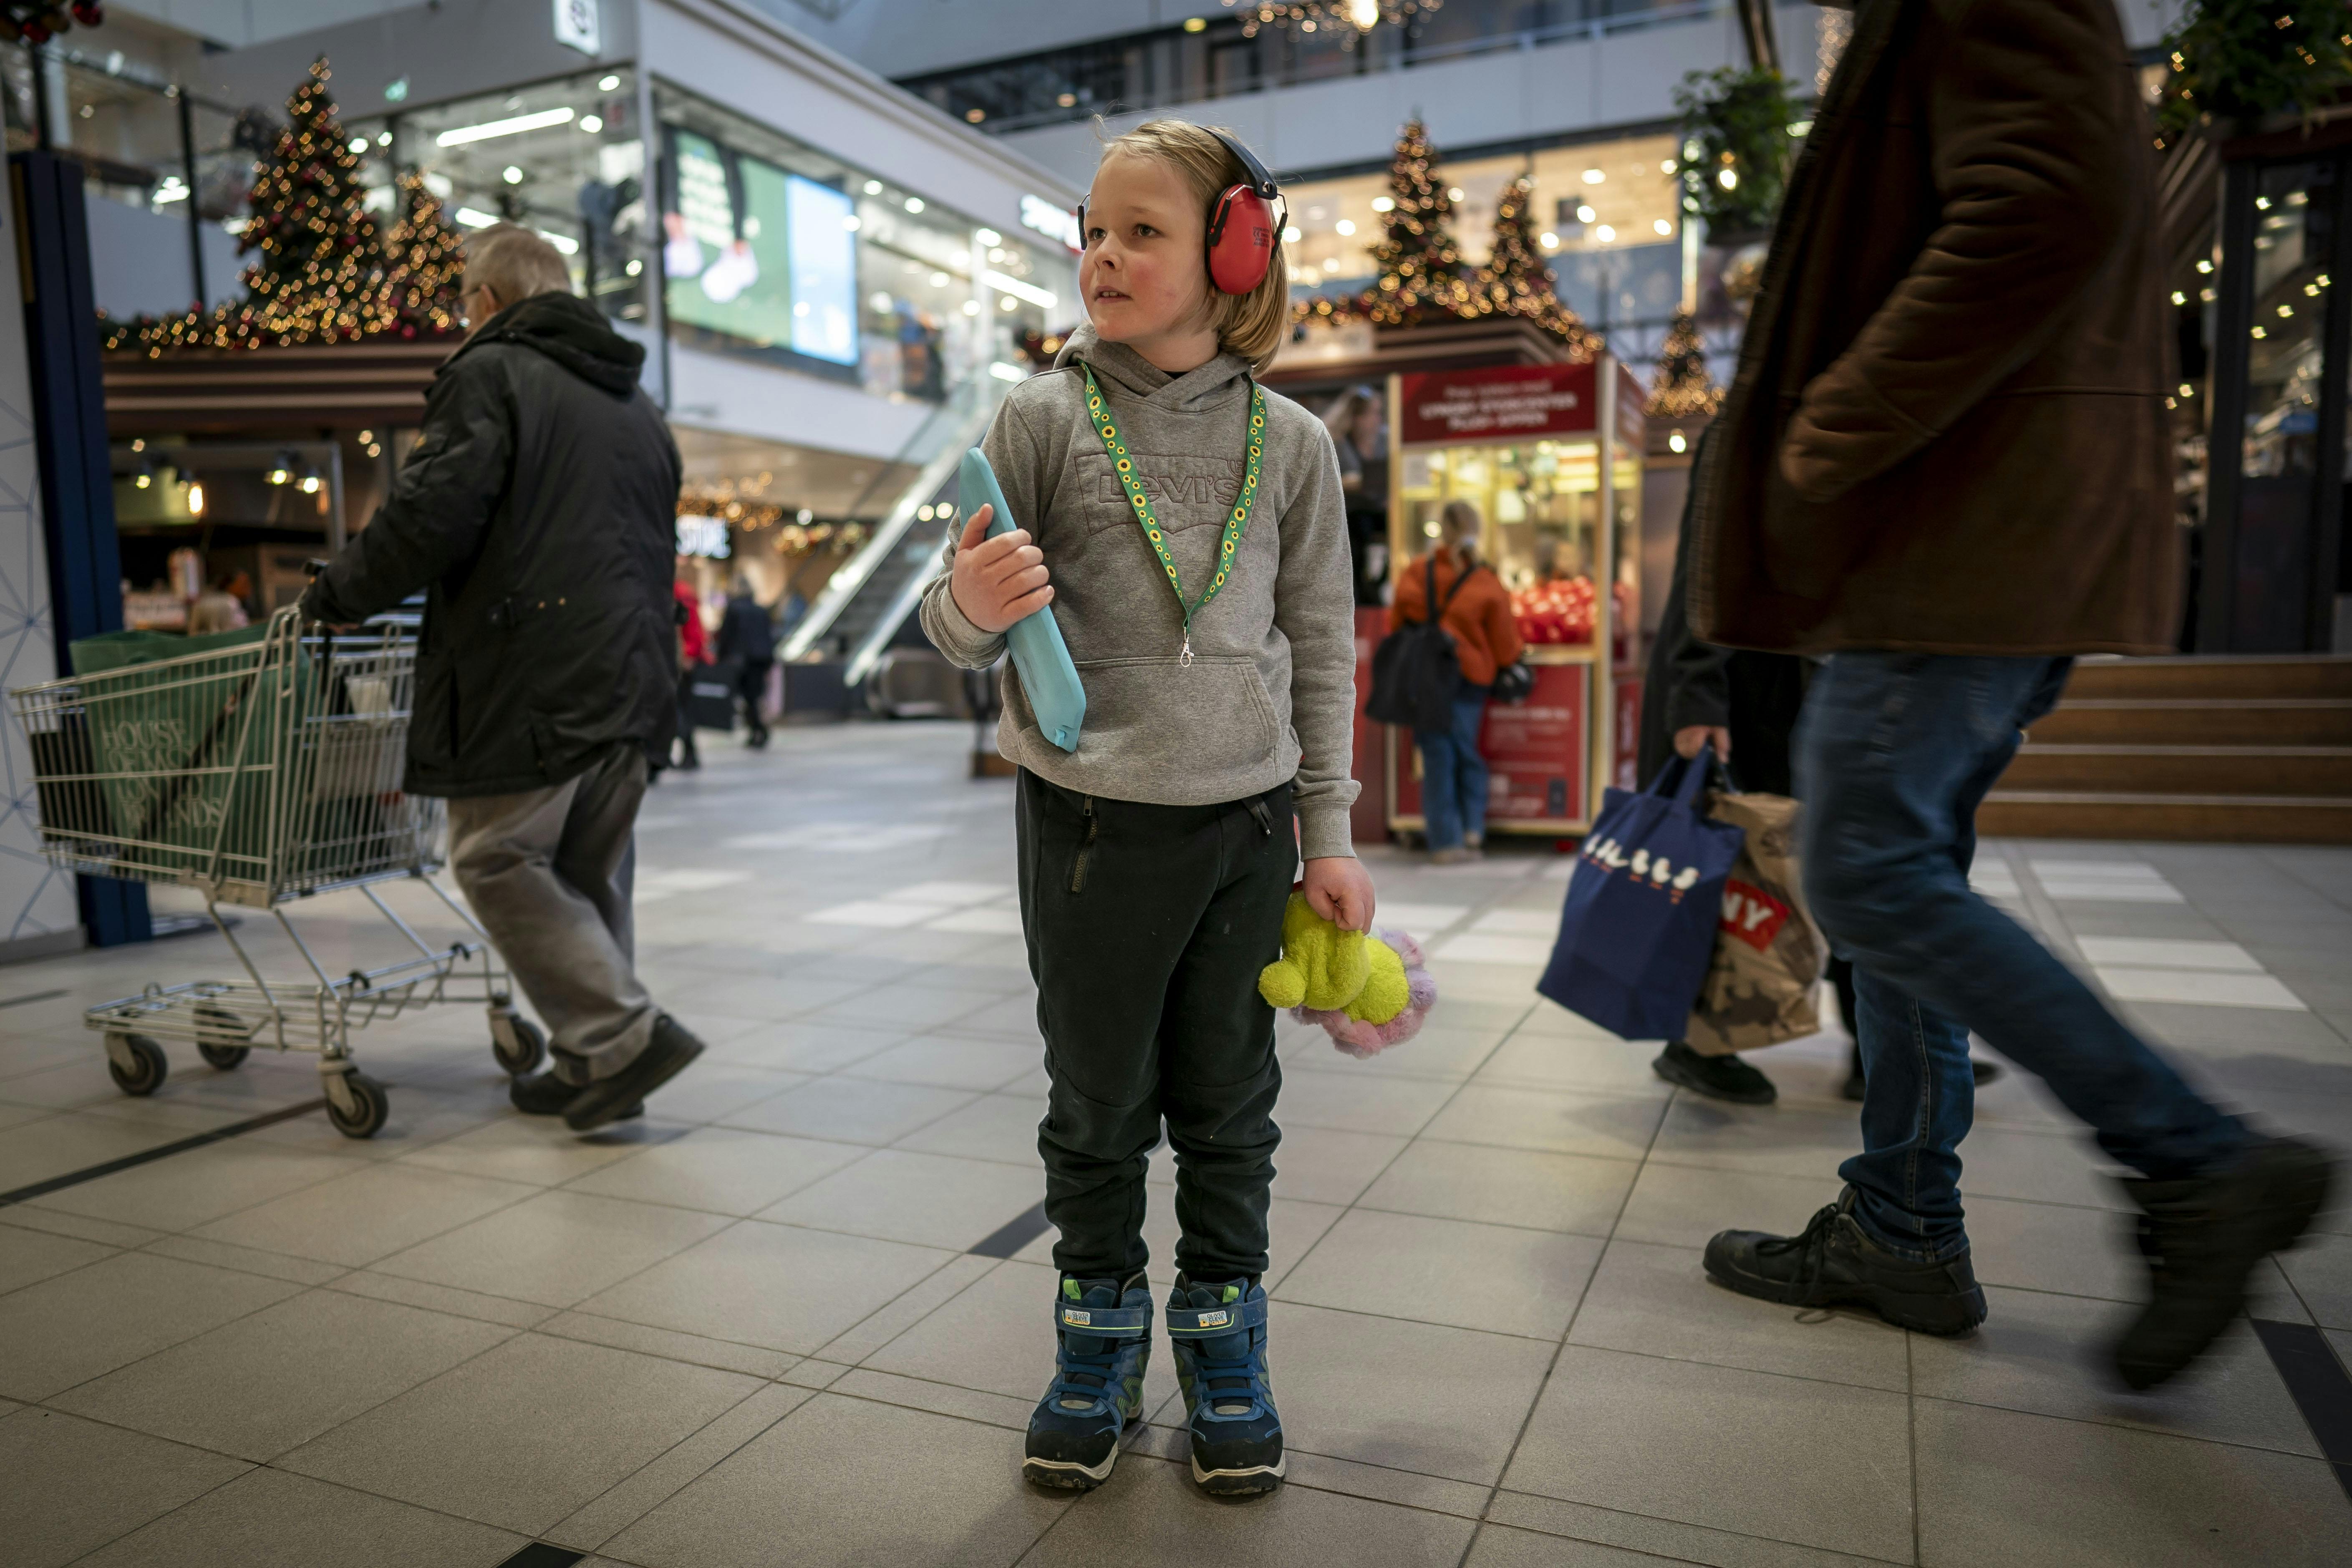 For 9-årige Oliver kan en indkøbstur i supermarkedet være en større udfordring end for de fleste.